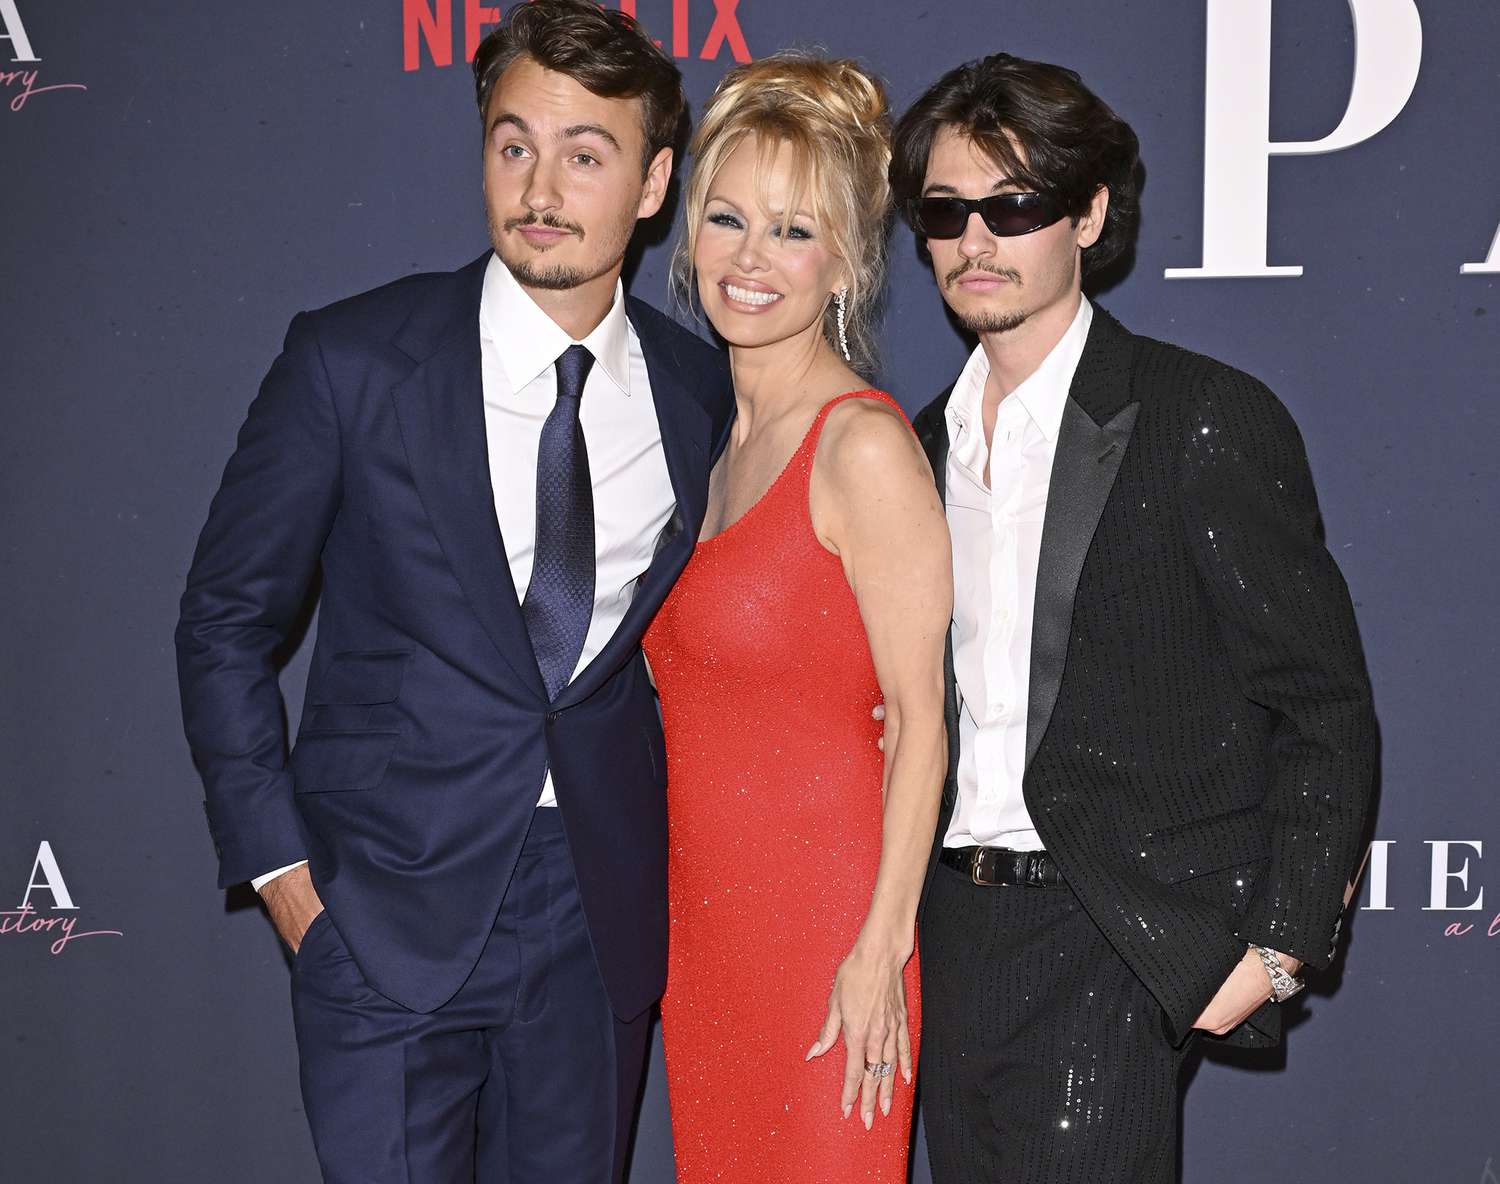 Pamela Anderson celebra nuevo documental con Sons, además de Brad Pitt y George Clooney, Selma Blair y más